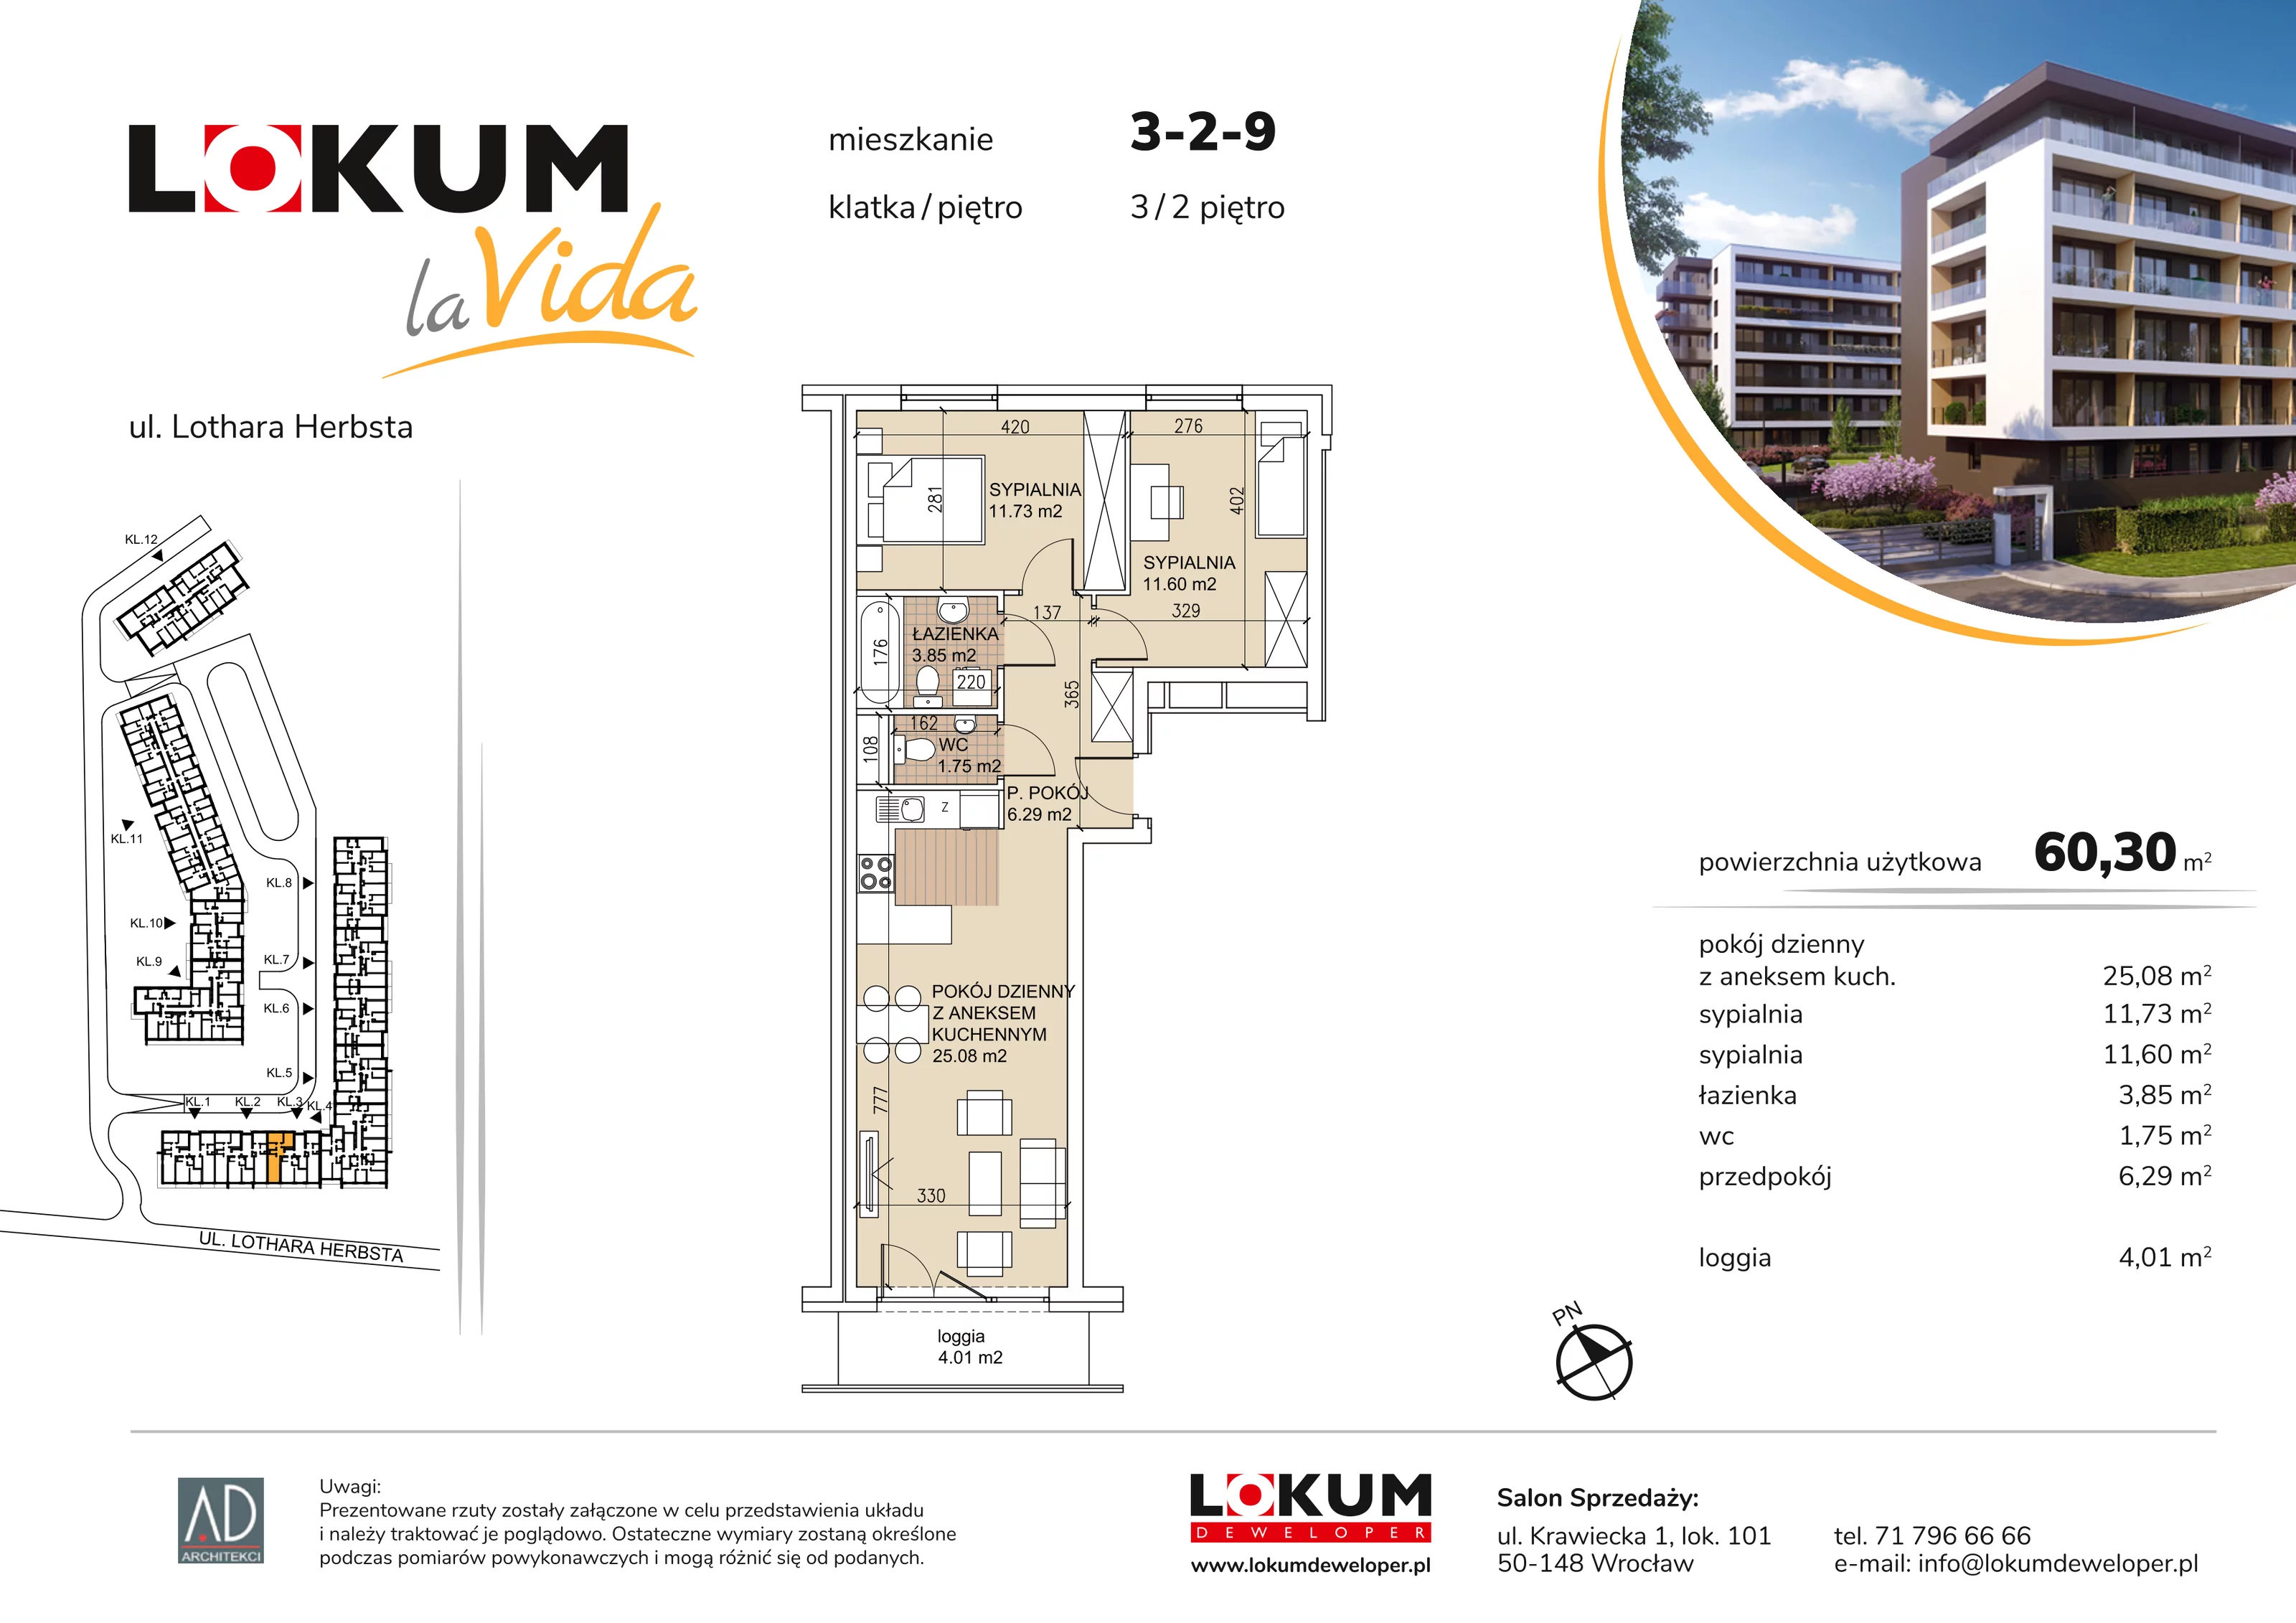 Mieszkanie 60,30 m², piętro 2, oferta nr 3-2-9, Lokum la Vida, Wrocław, Sołtysowice, ul. Lothara Herbsta